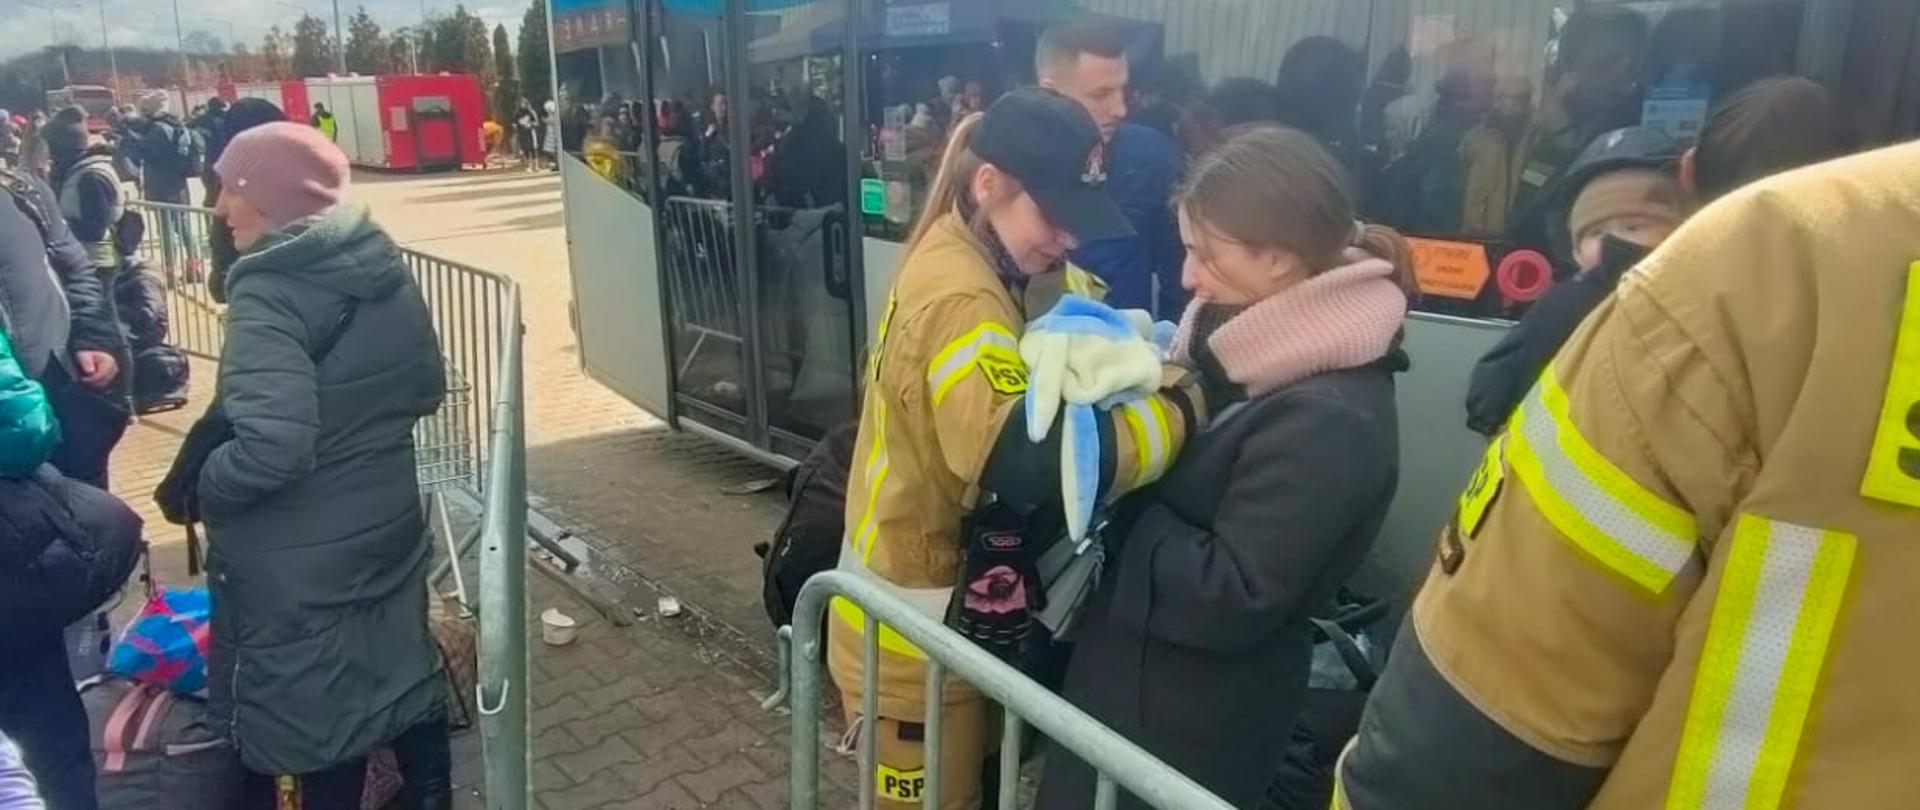 Na zdjęciu widać kobietę, która przekazuje strażakowi niemowlę. Dookoła widać innych uchodźców, a także strażaków. Z tyłu stoi zaparkowany autobus.